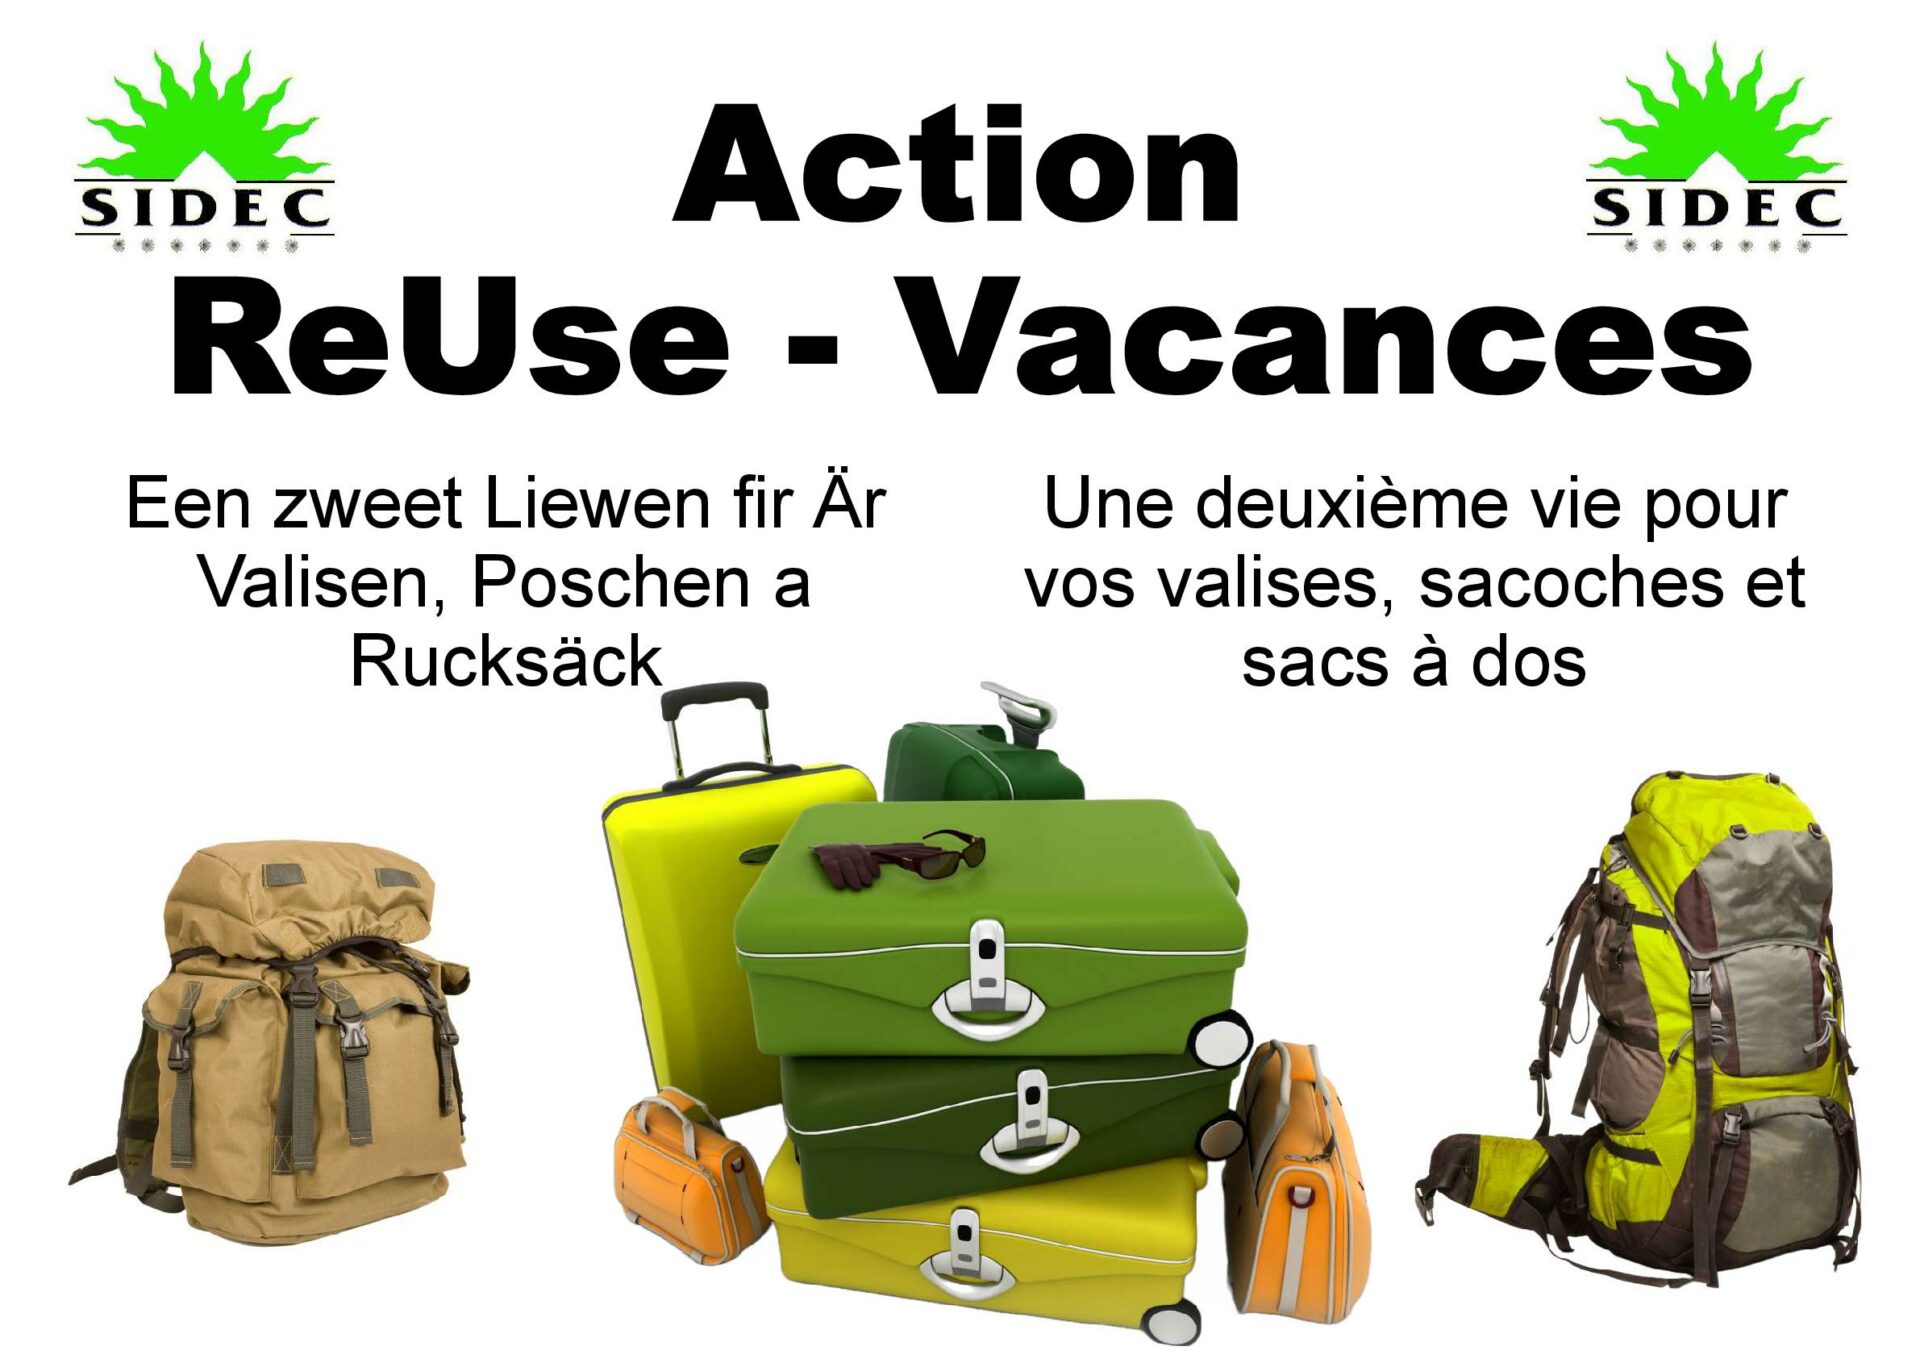 Action ReUse-Vacances│SIDEC